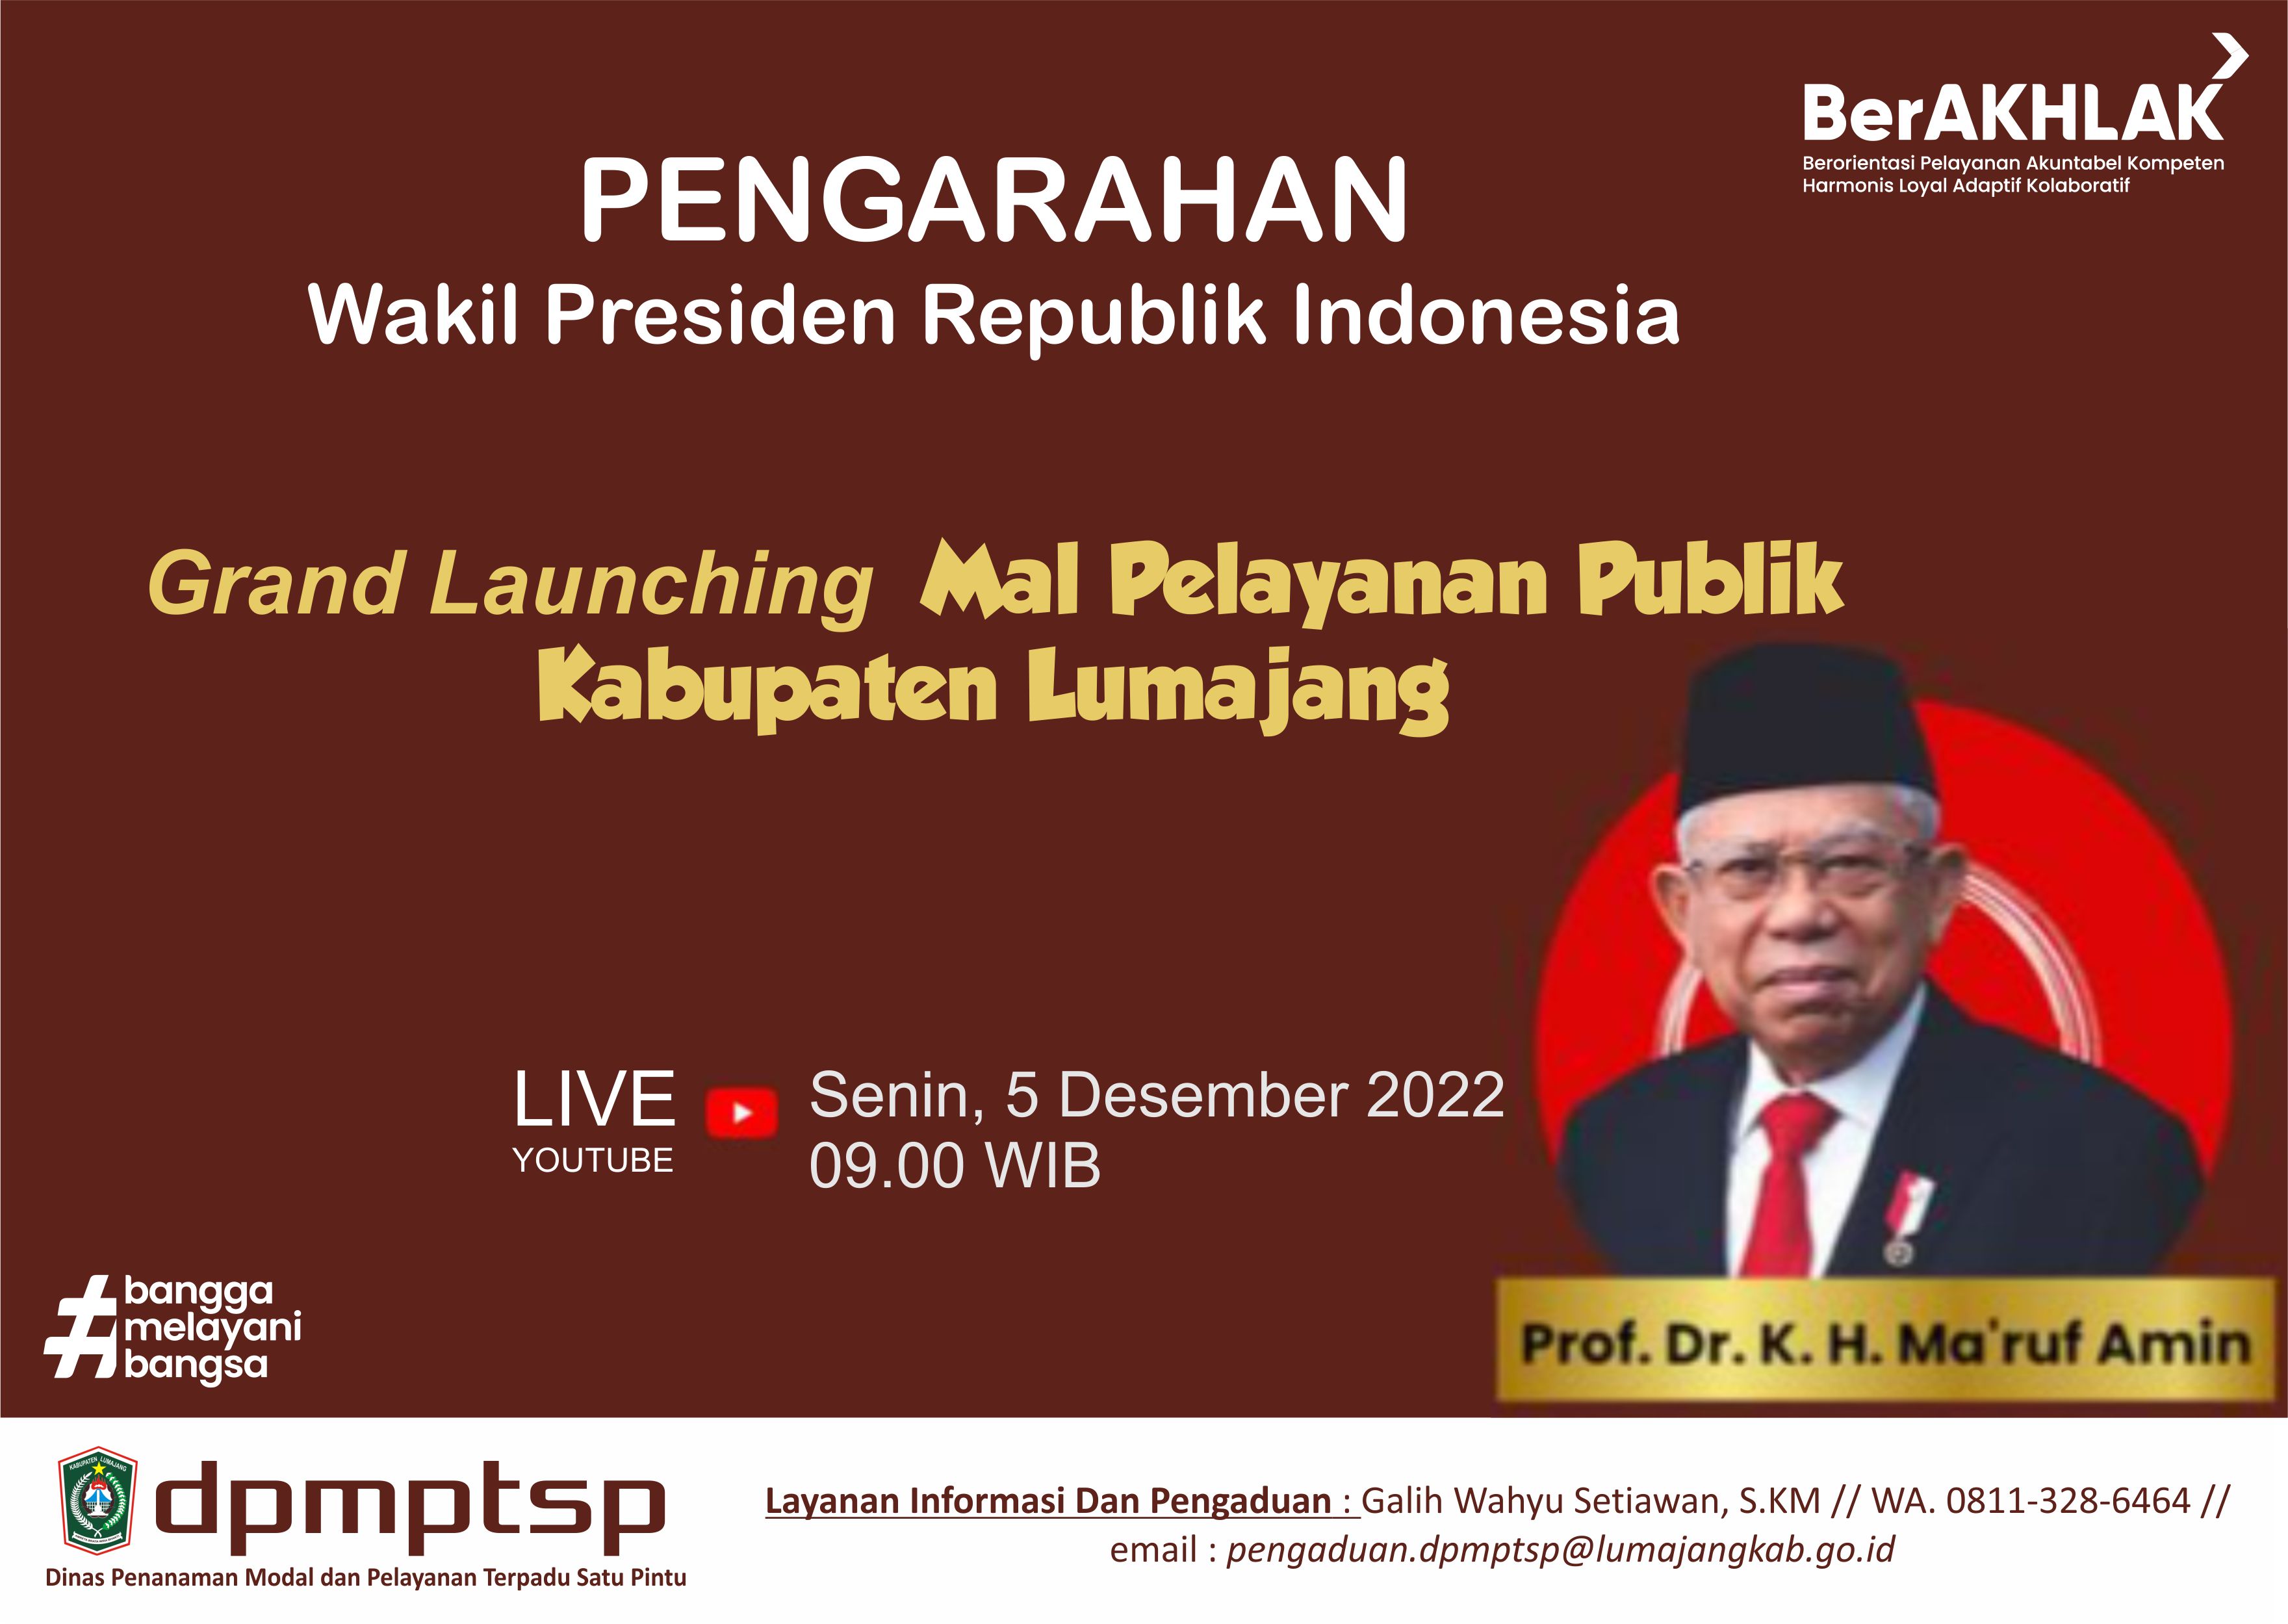 Pengarahan Wakil Presiden Republik Indonesia pada Kegiatan Pencanangan Reformasi Birokrasi Tematik, 